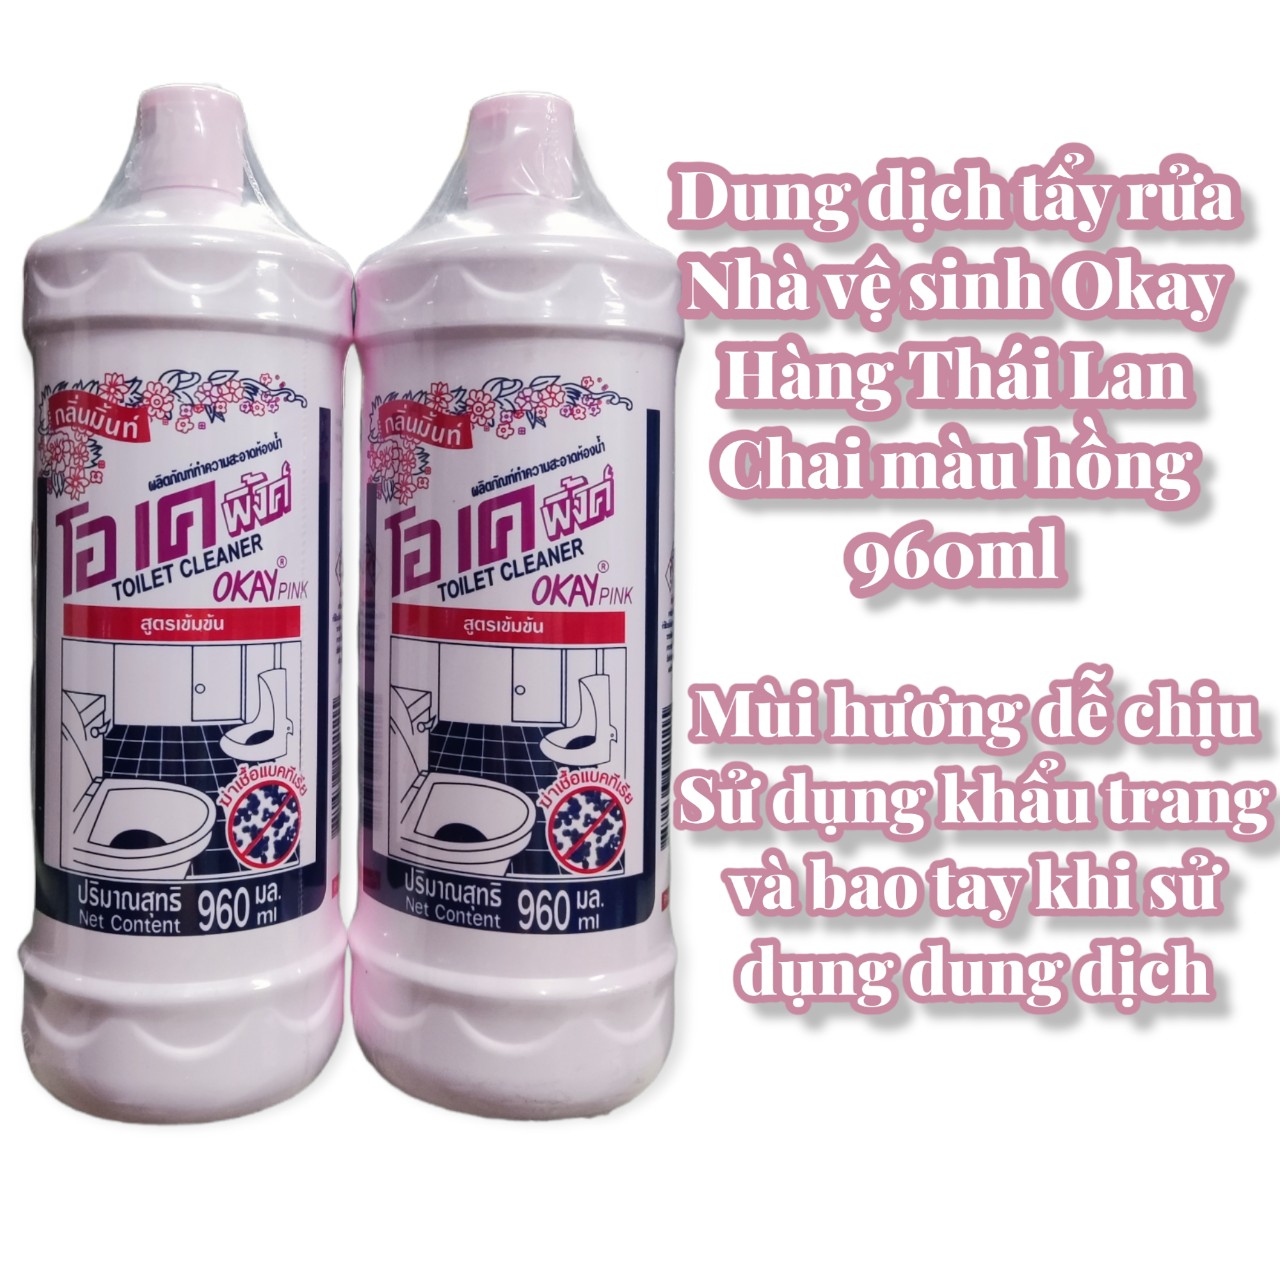 Dung dịch tẩy rửa nhà vệ sinh Okay chai hồng - made in Thailand - dung tích 960ml